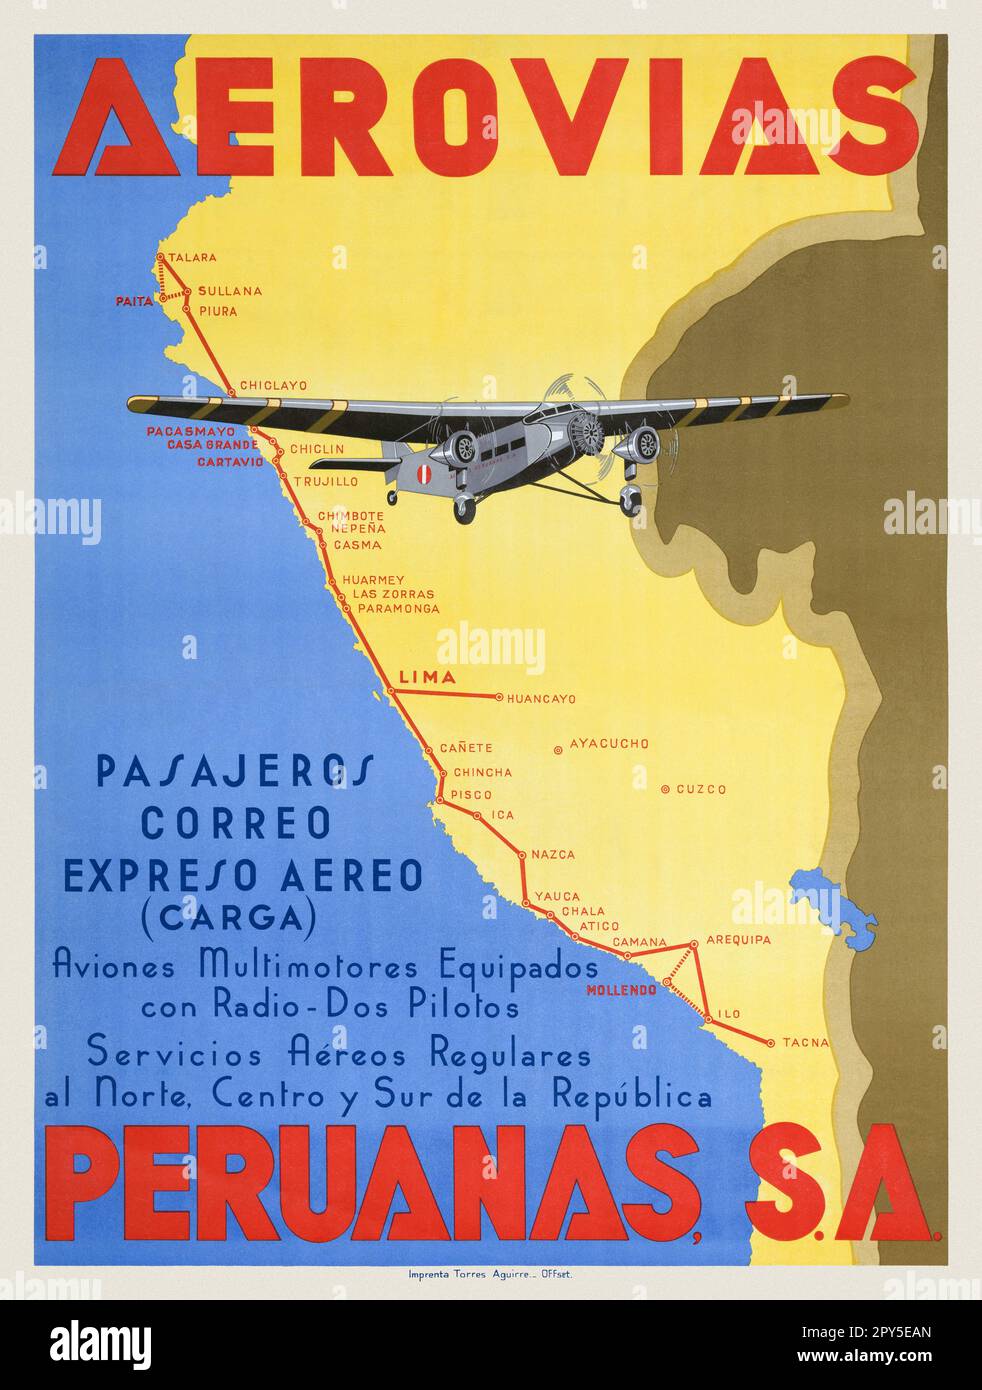 Aerovias Peruanas S.A. Künstler unbekannt. Poster veröffentlicht 1936 in Peru. Stockfoto